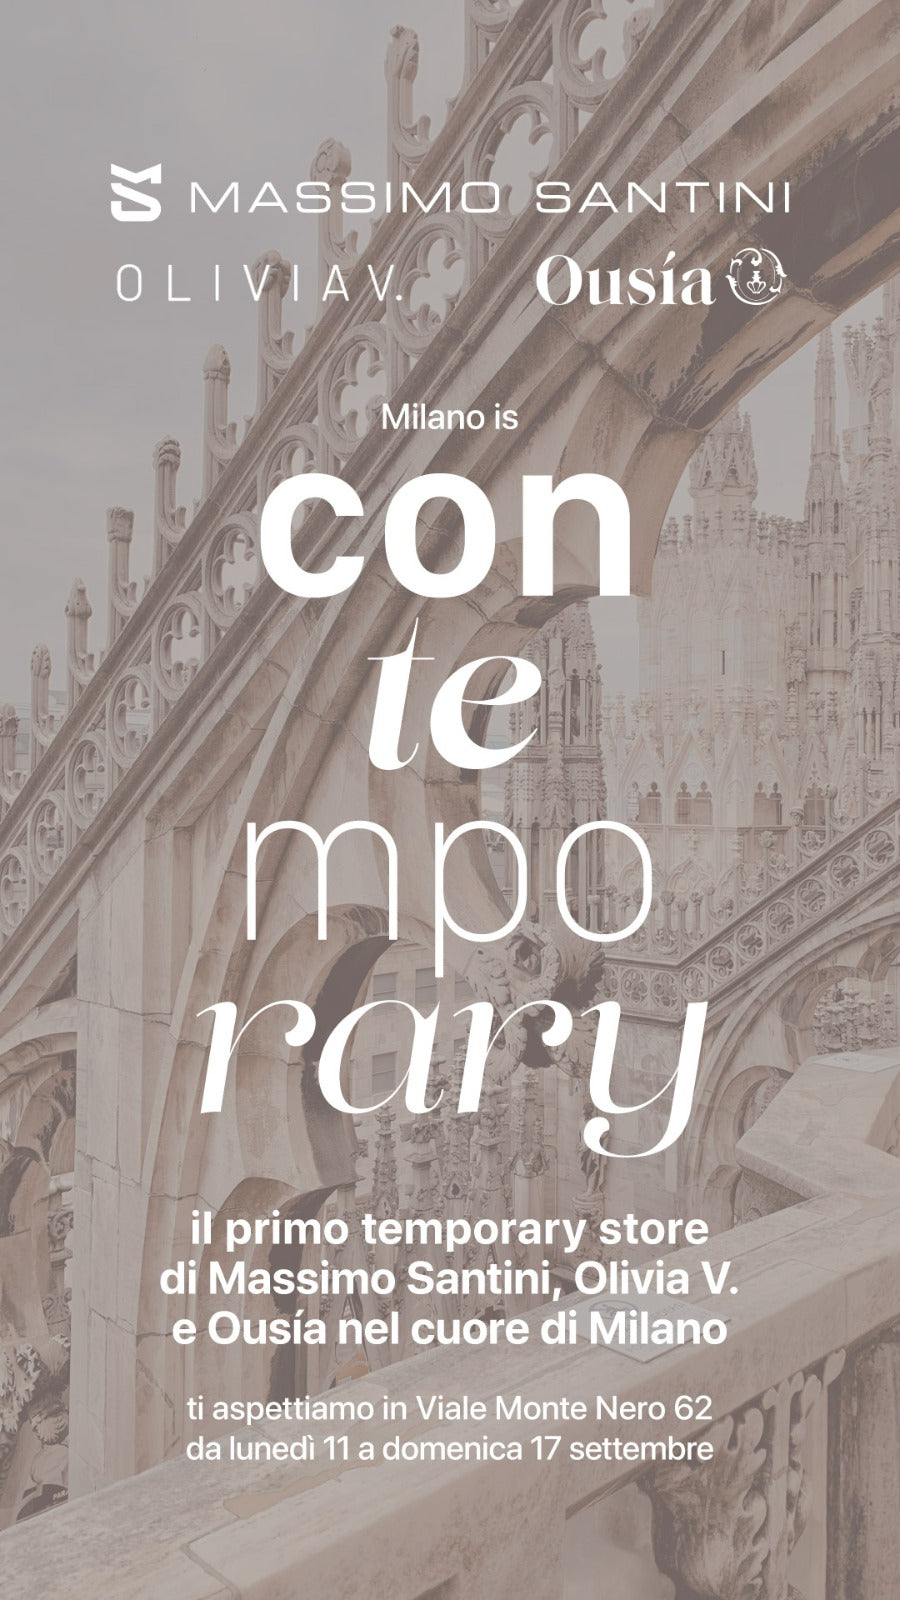 MILANO is Con-TEMPORARY!